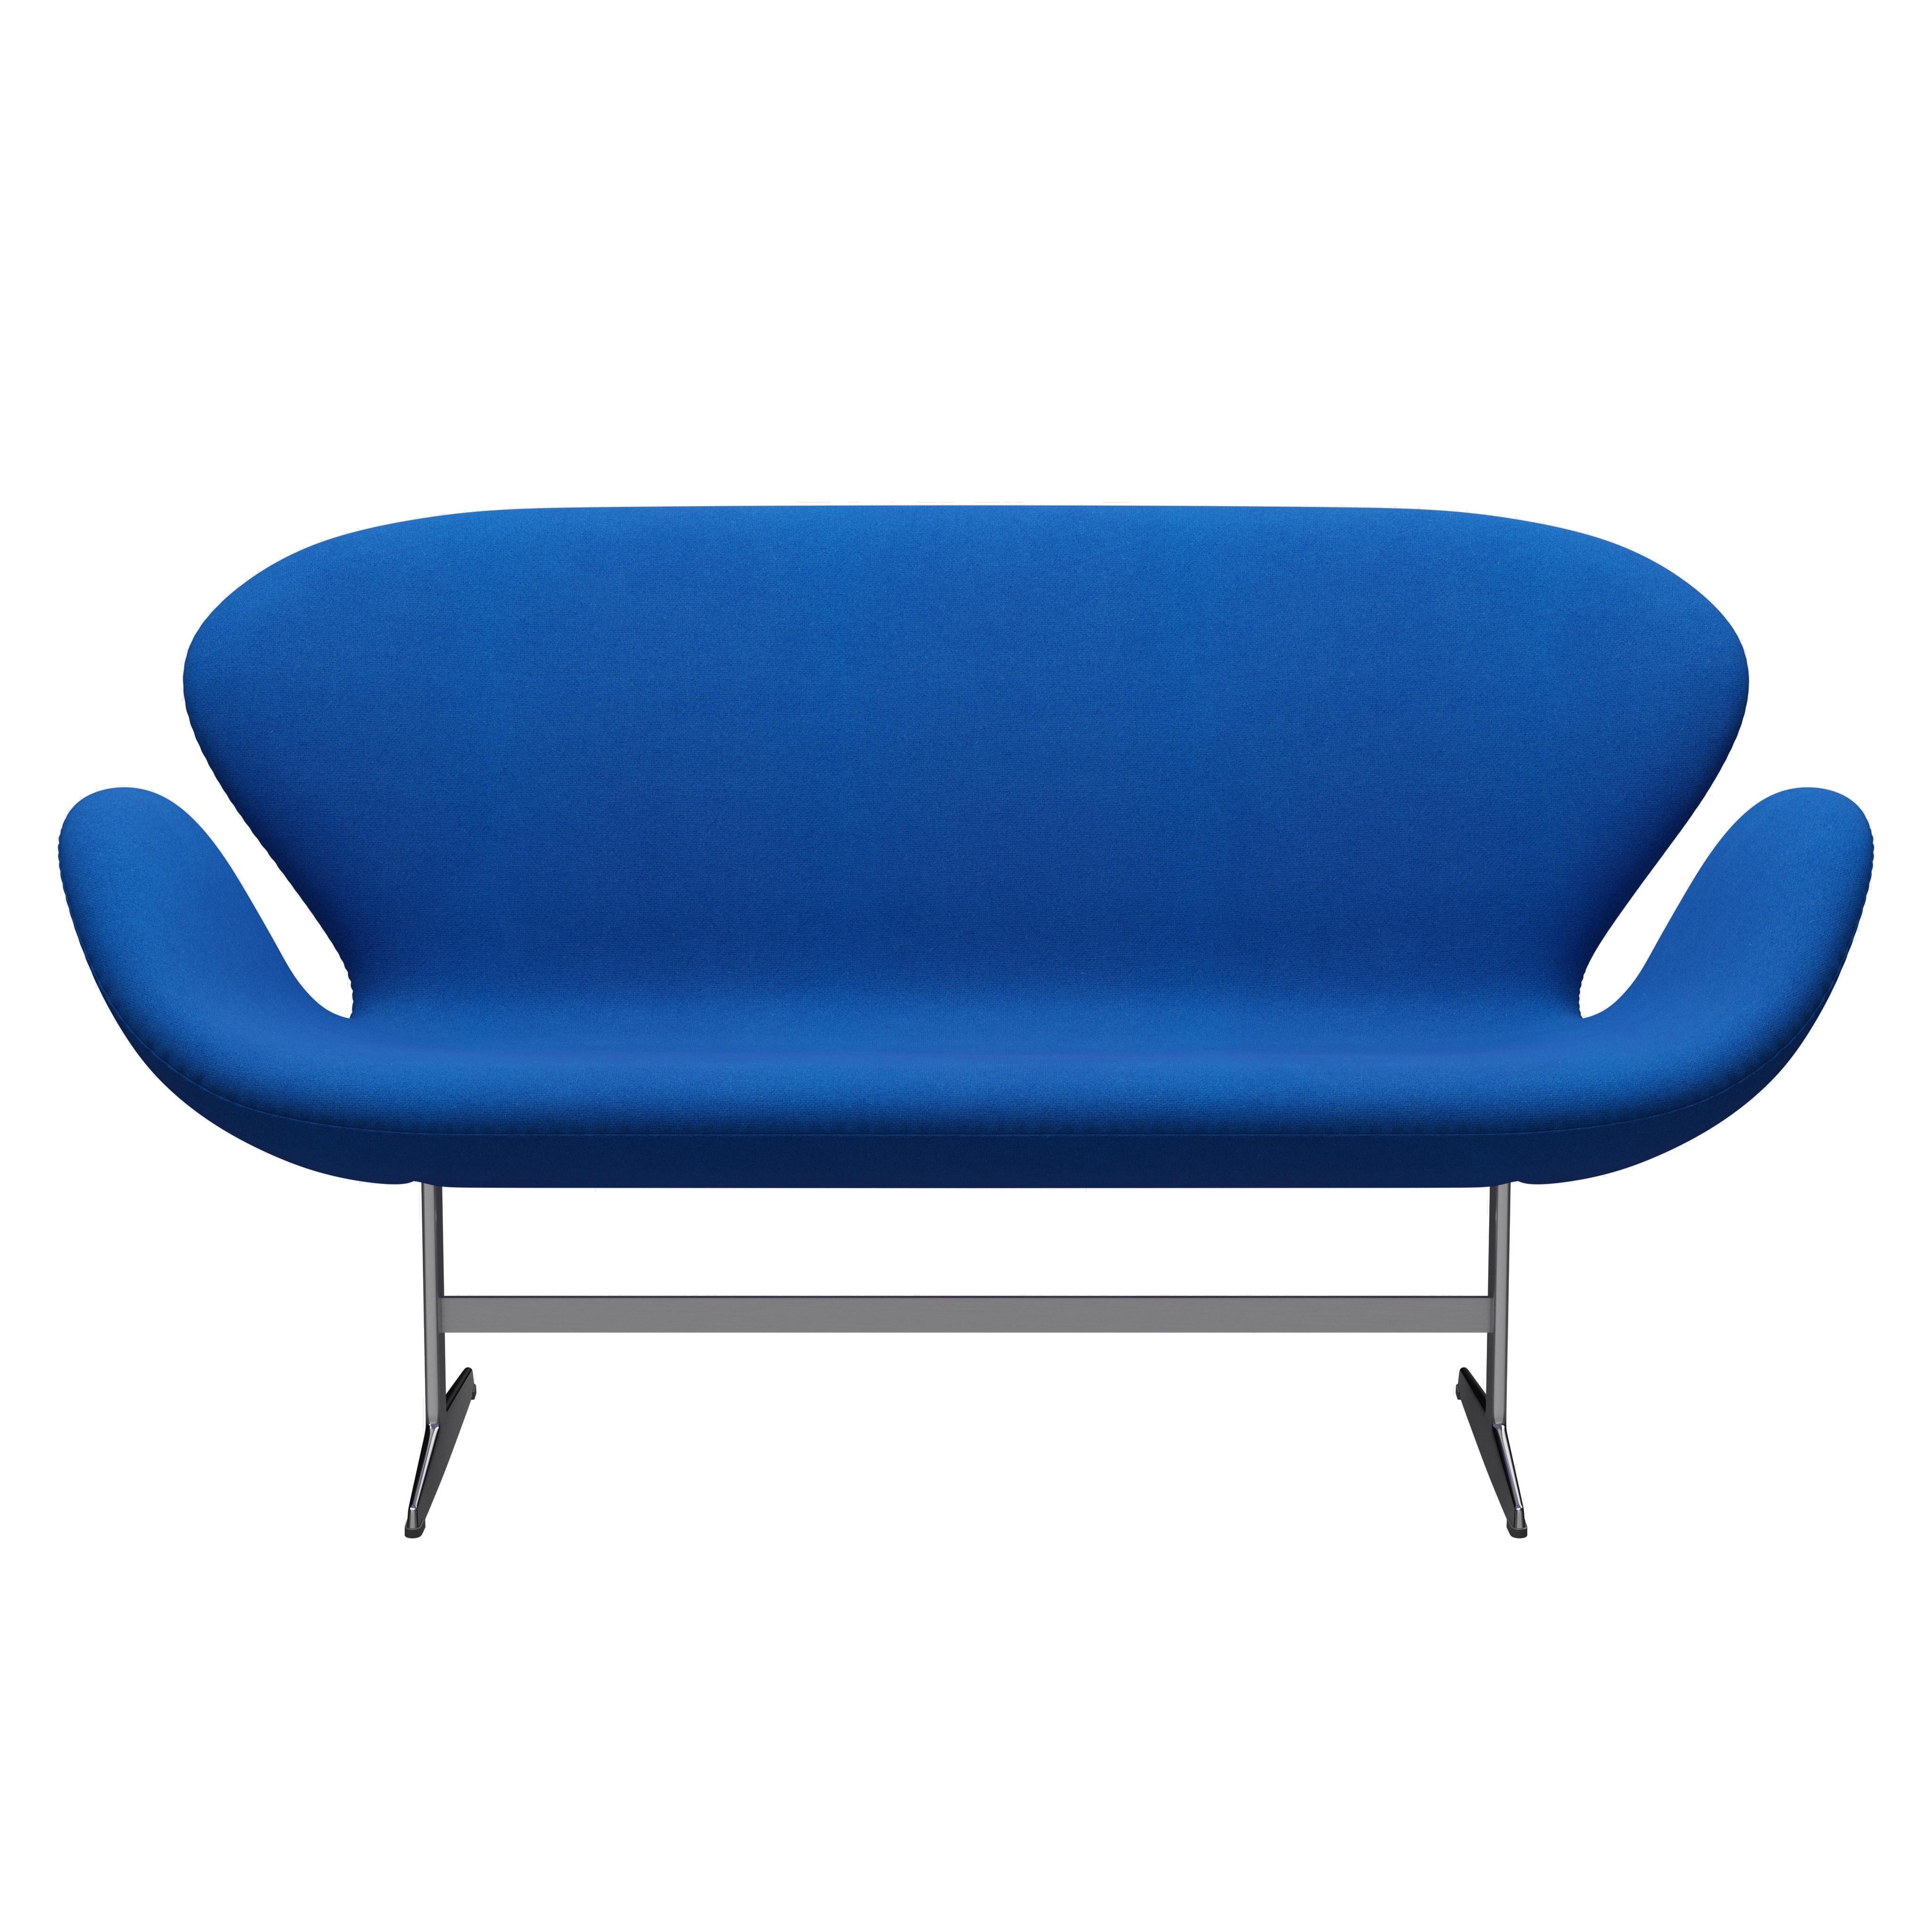 Arne Jacobsen 'Swan' Sofa for Fritz Hansen in Fabric Upholstery (Cat. 1) For Sale 3